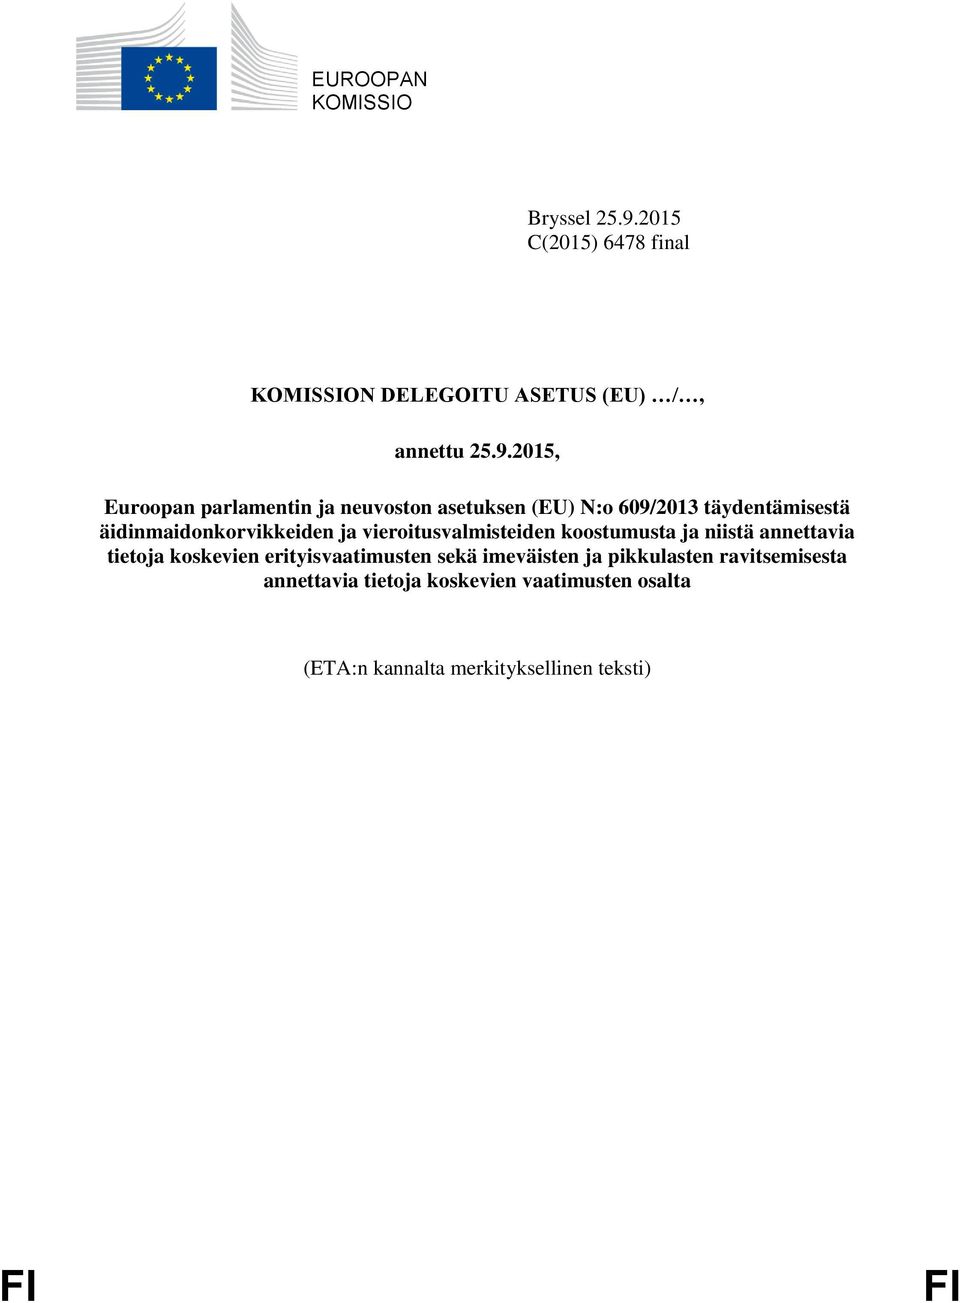 2015, Euroopan parlamentin ja neuvoston asetuksen (EU) N:o 609/2013 täydentämisestä äidinmaidonkorvikkeiden ja